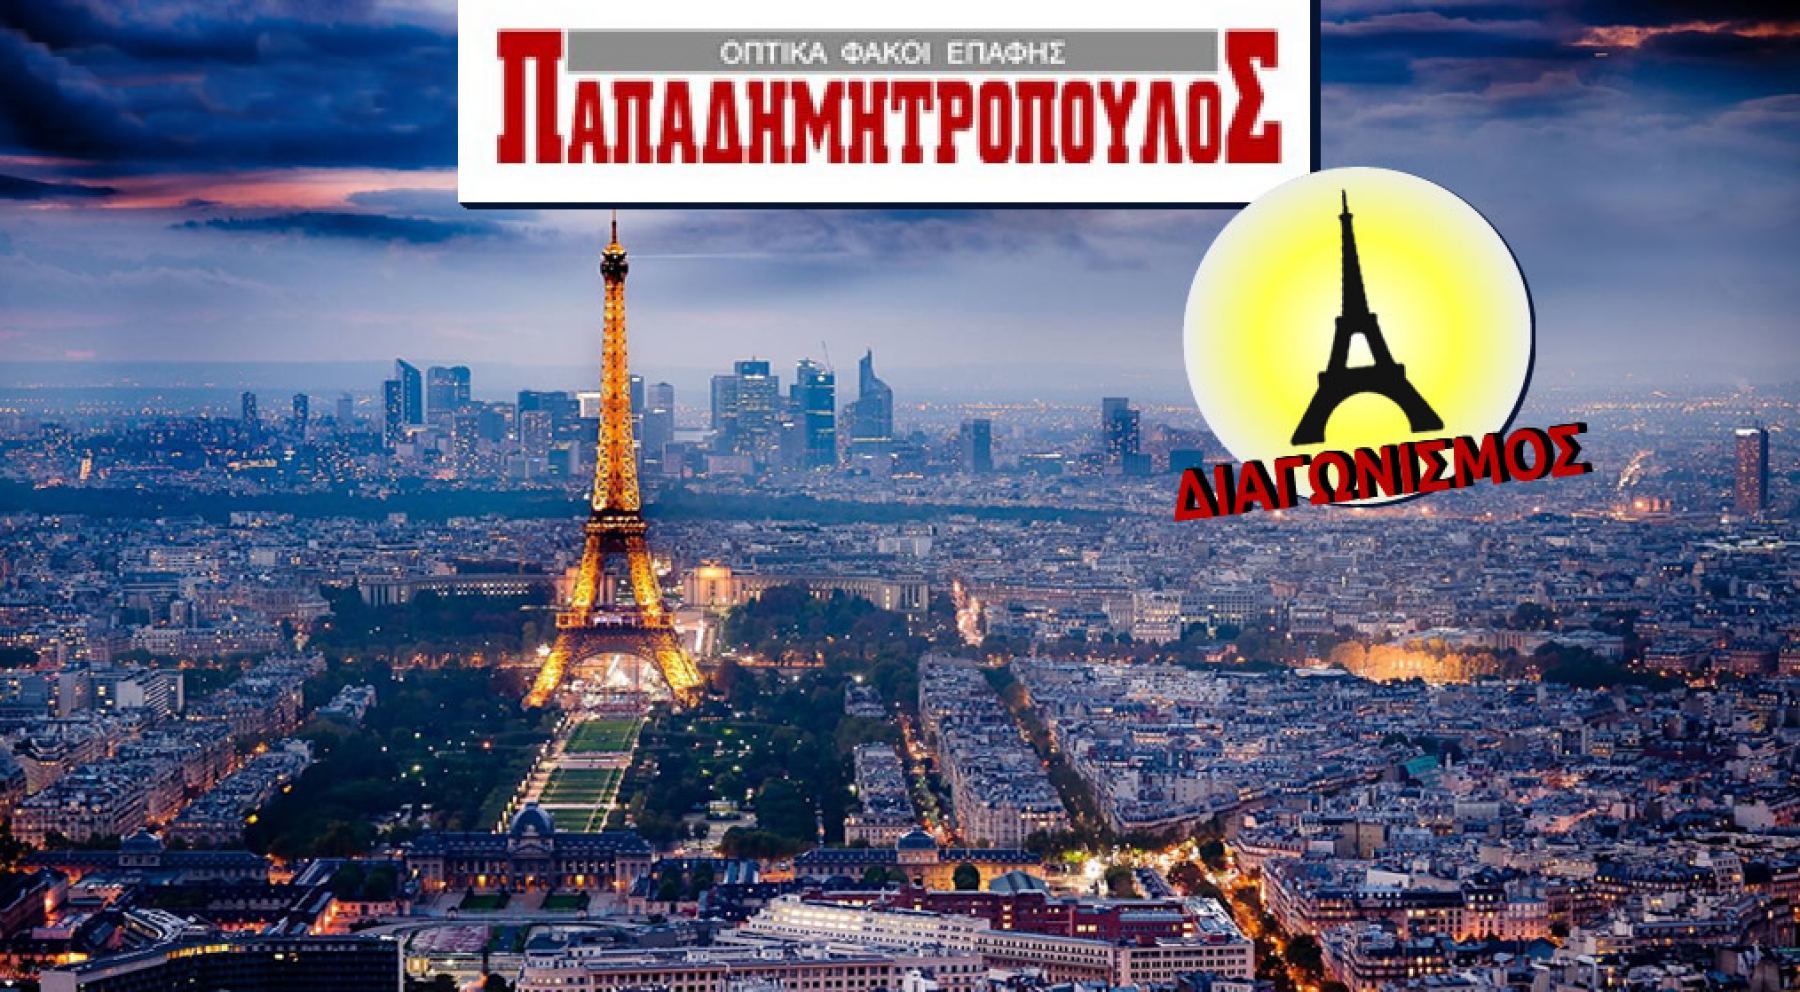 «Παπαδημητρόπουλος»: Σούπερ προσφορές και ταξίδι για δύο στο Παρίσι!